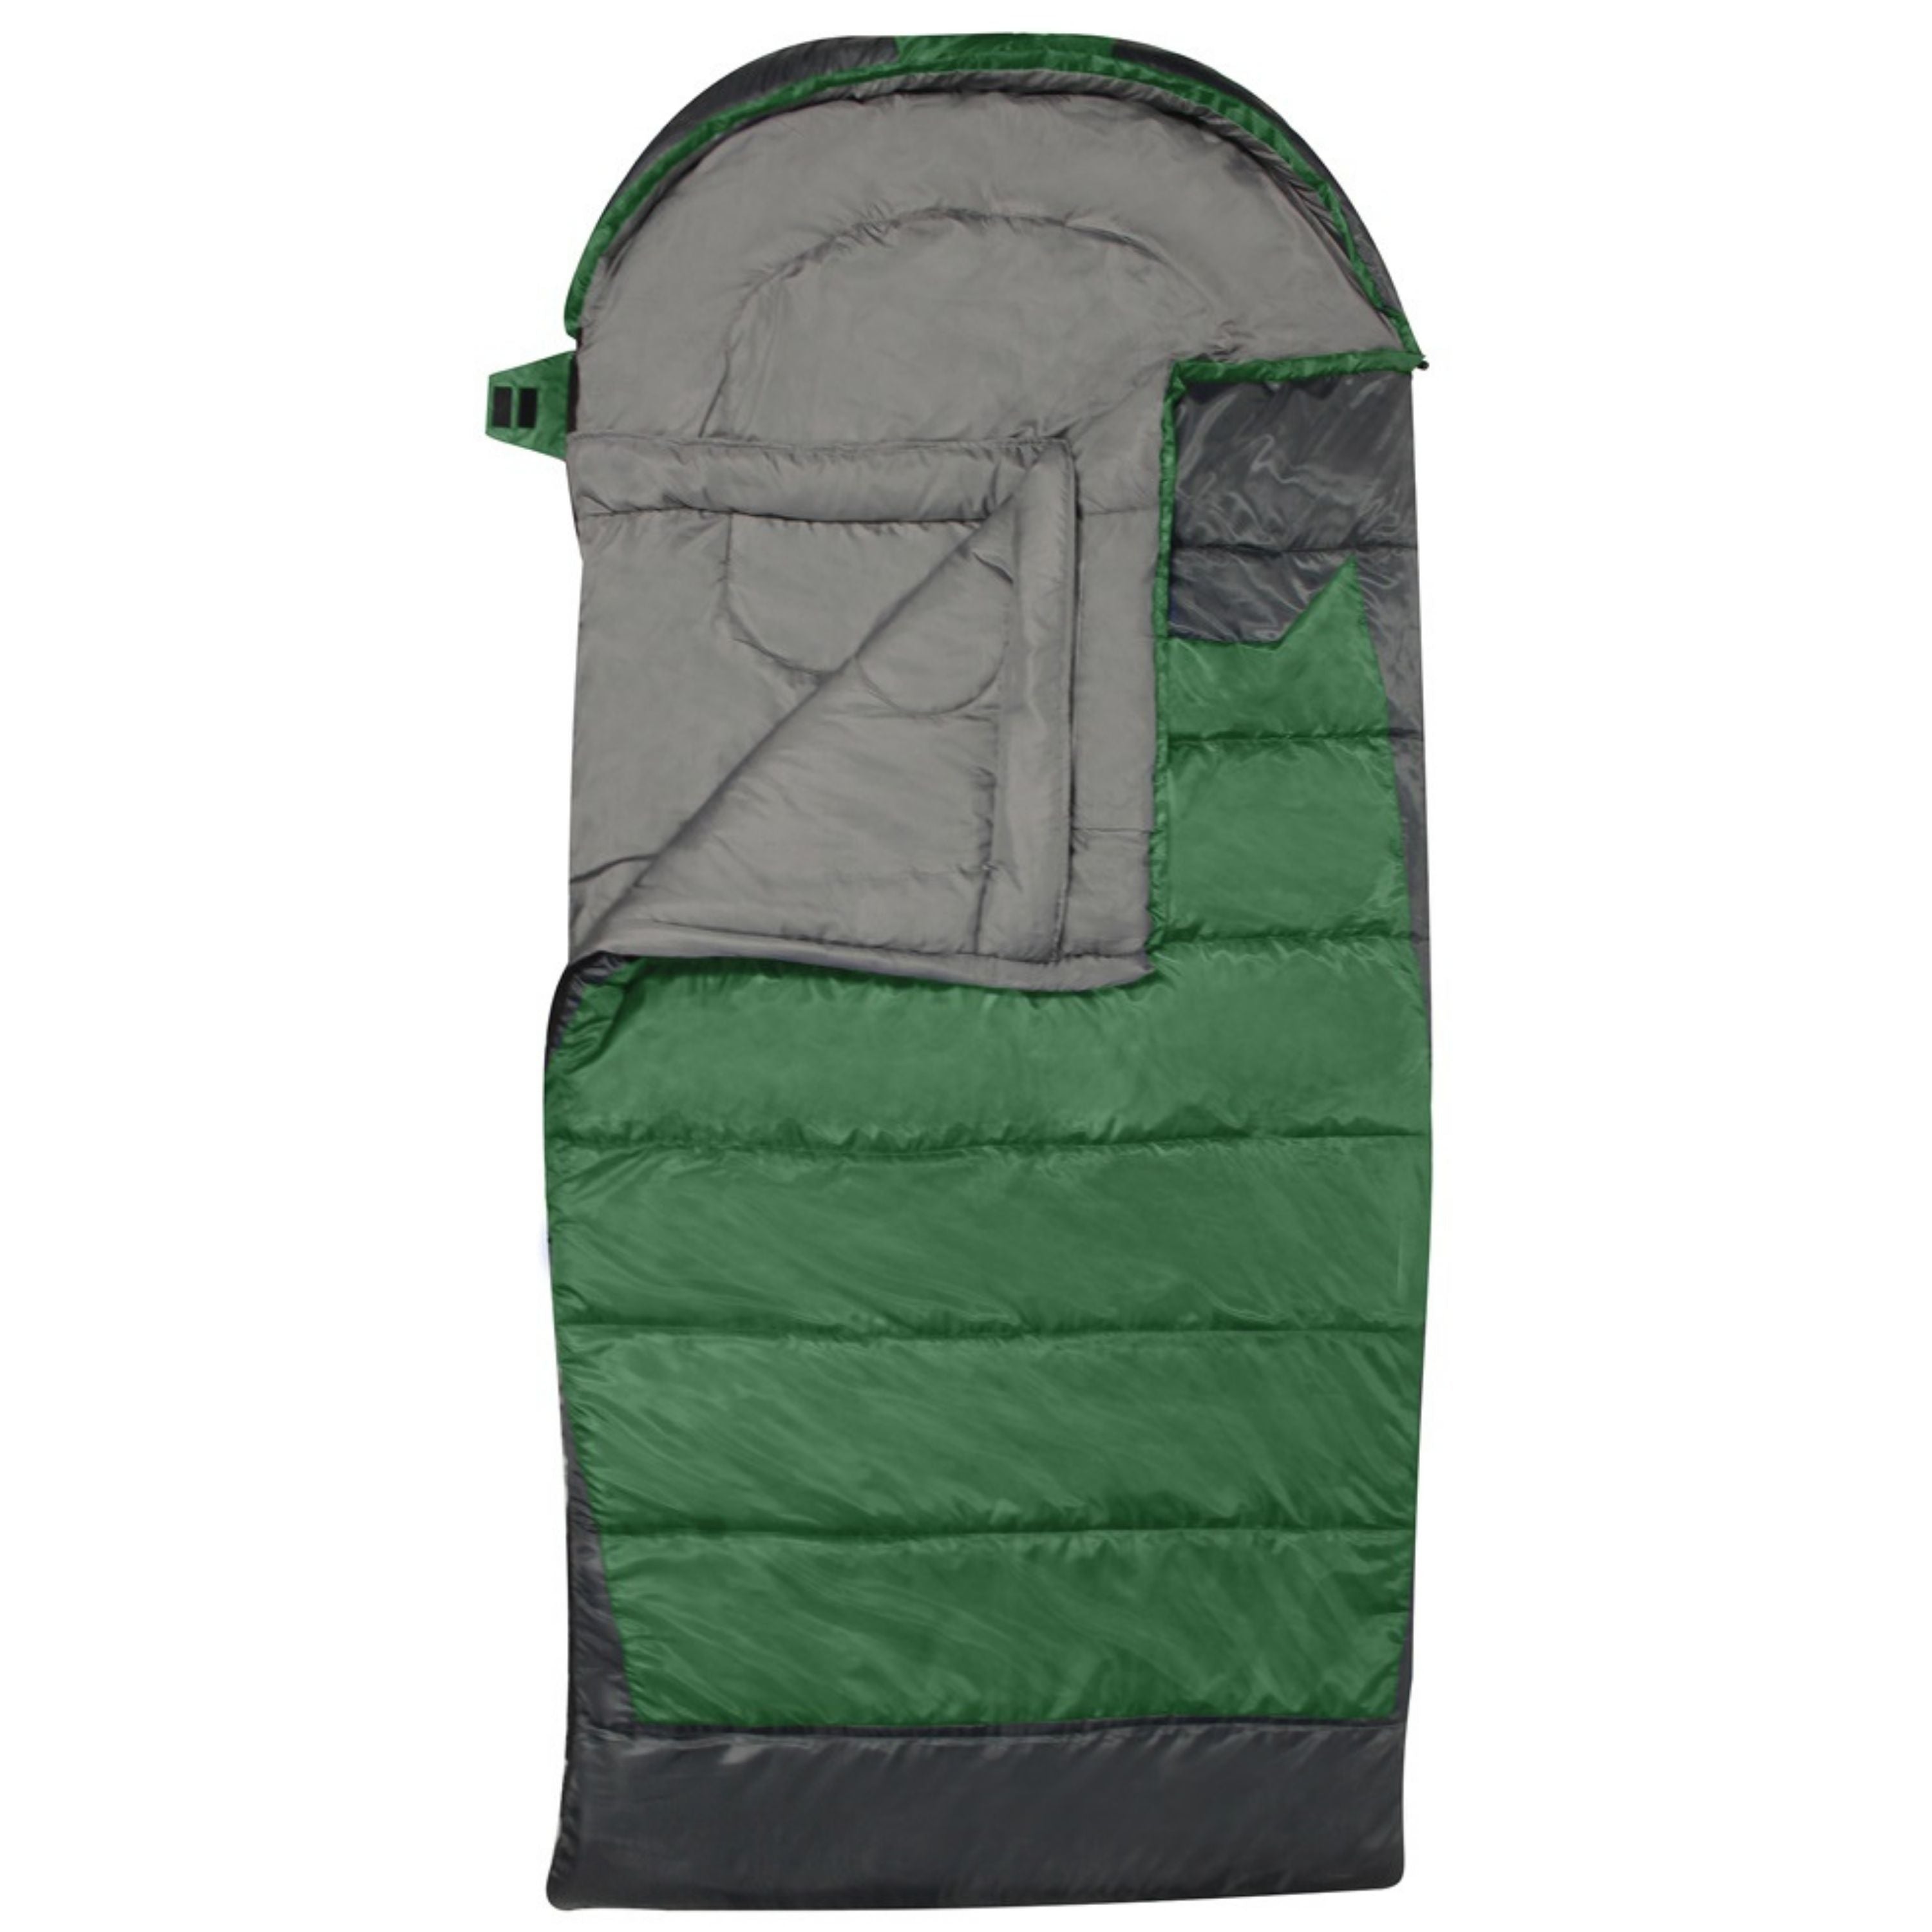 Sac de couchage “Comfort zone”||“Comfort zone” sleeping bag